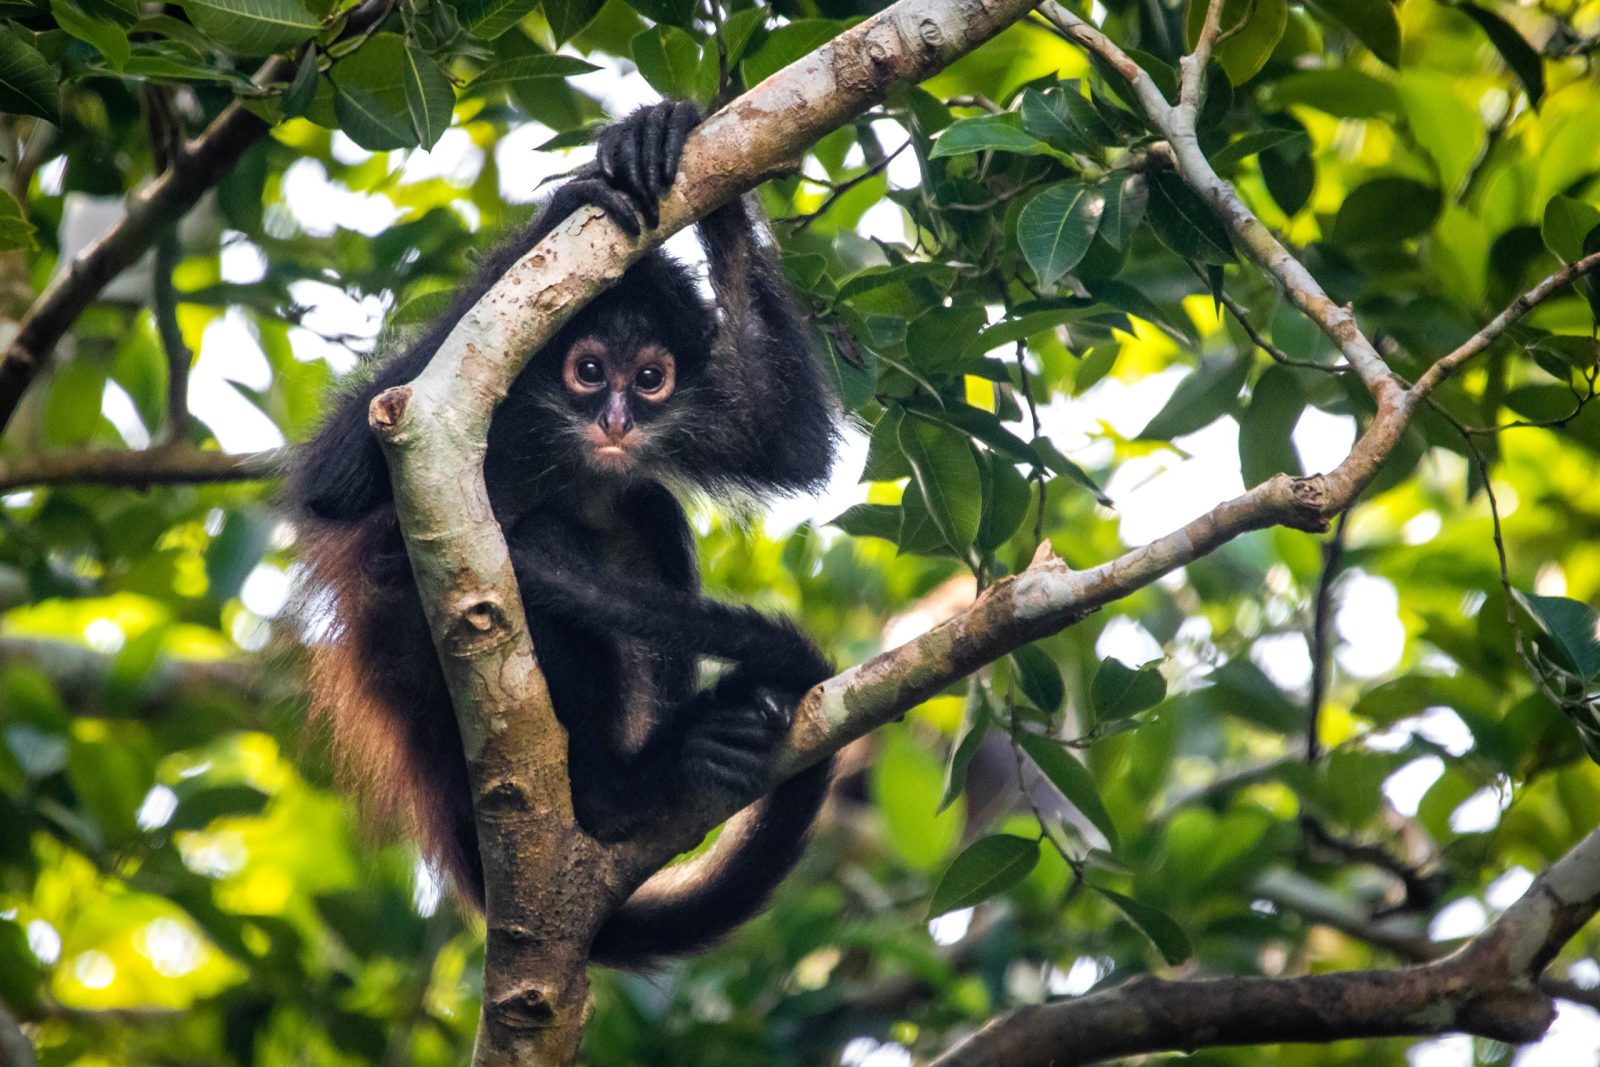 Spider monkey in trees in rainforest